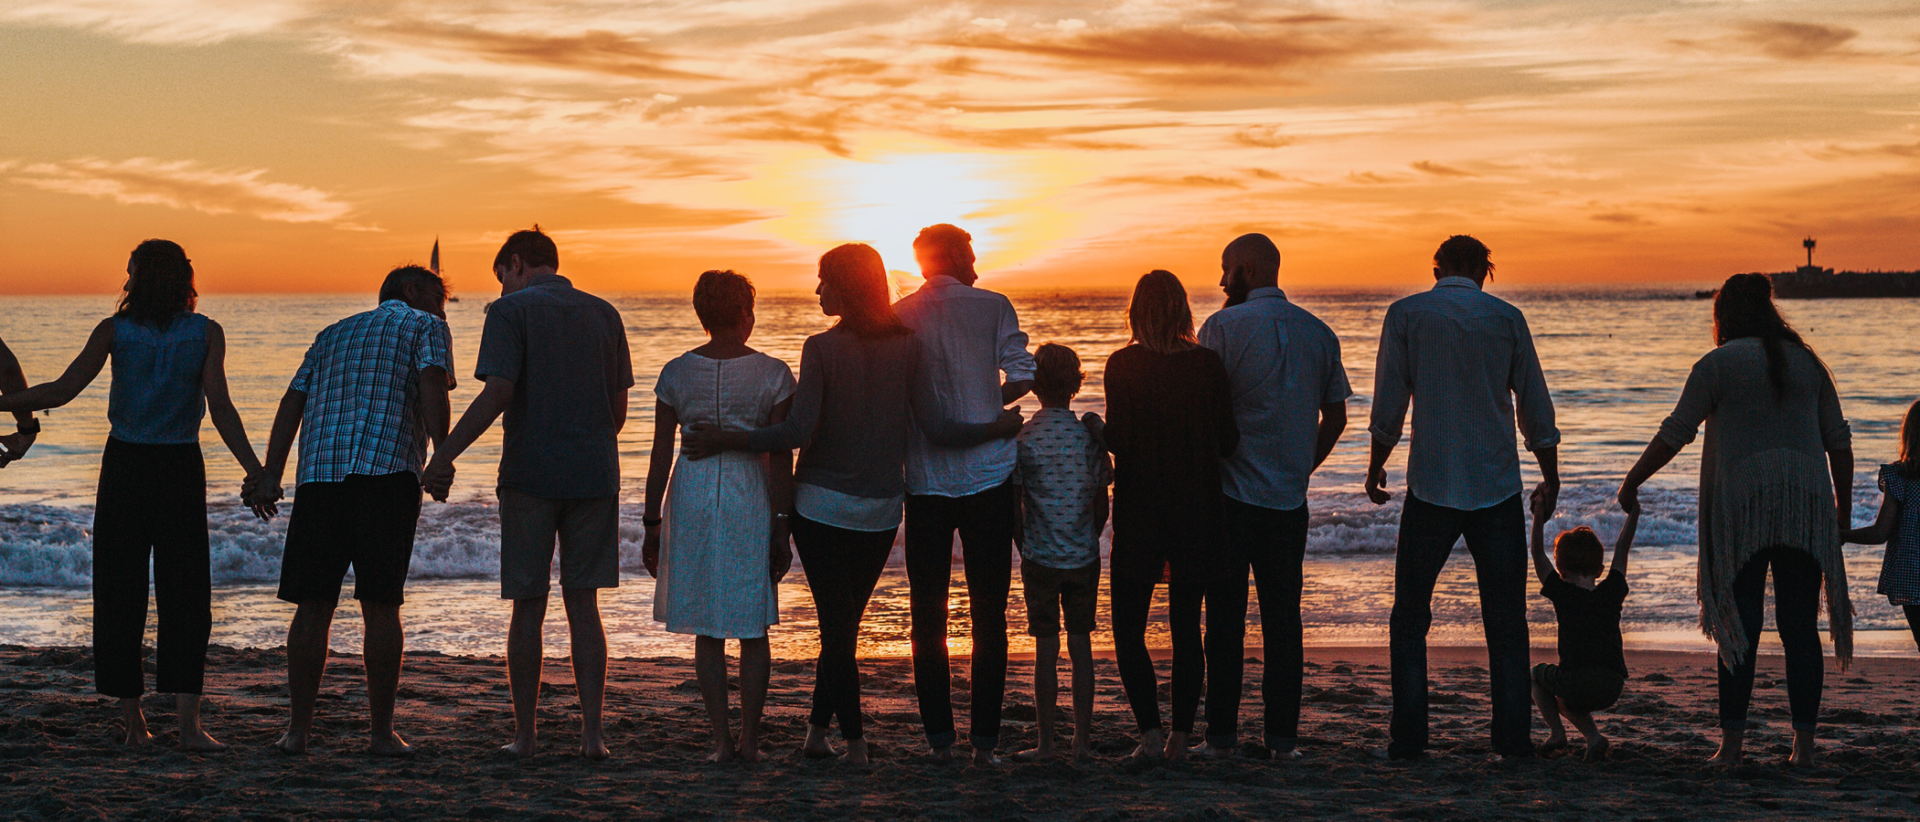 Perheitä rannalla, siluetti, auringonlasku.